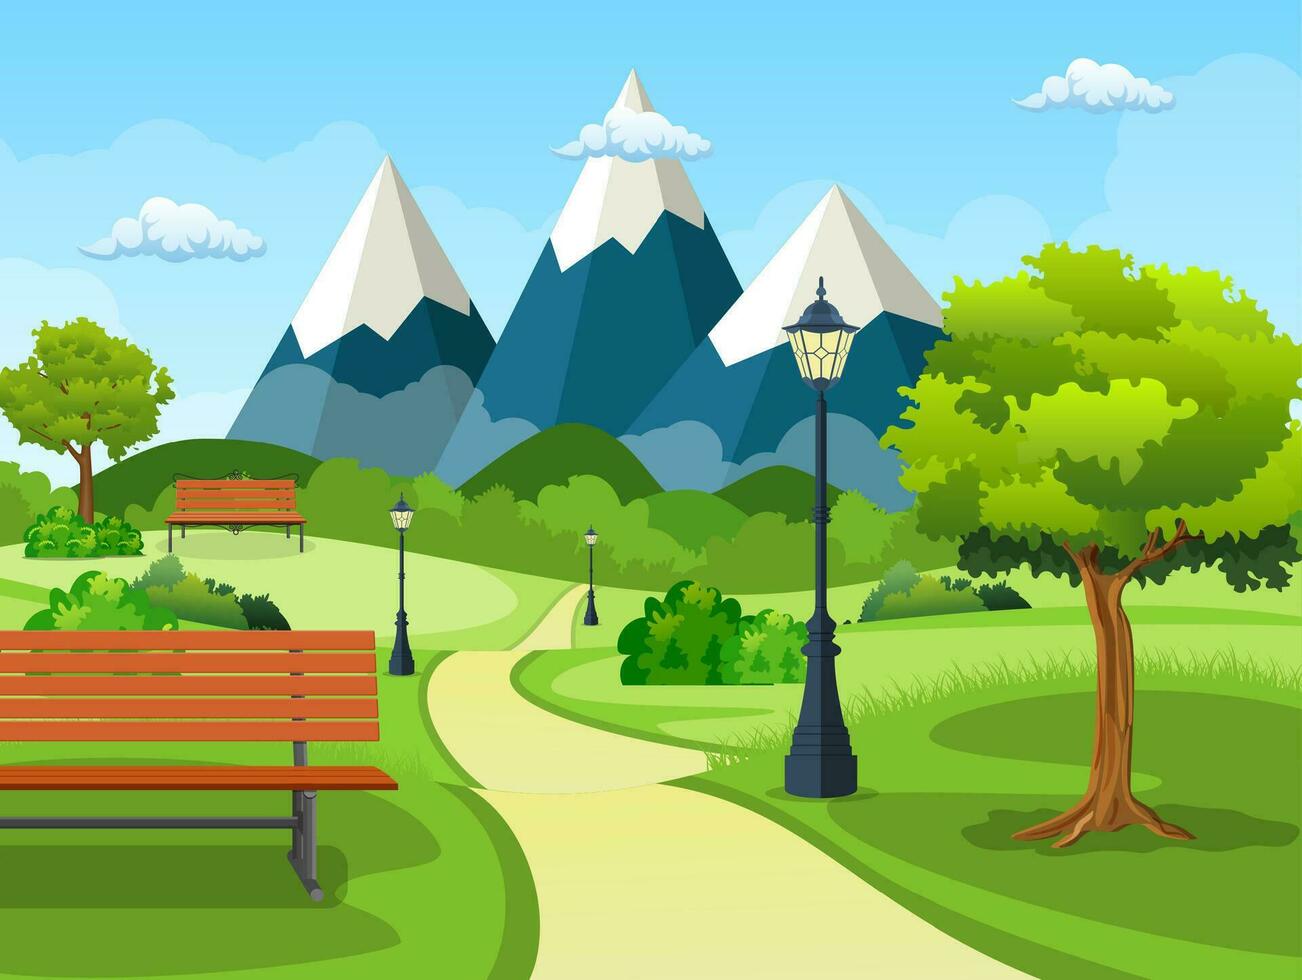 sommar, vår dag parkera. trä- bänk, gata lampa i parkera spår med frodig grön träd, buskar och bergen i de bakgrund. vektor illustration i platt stil